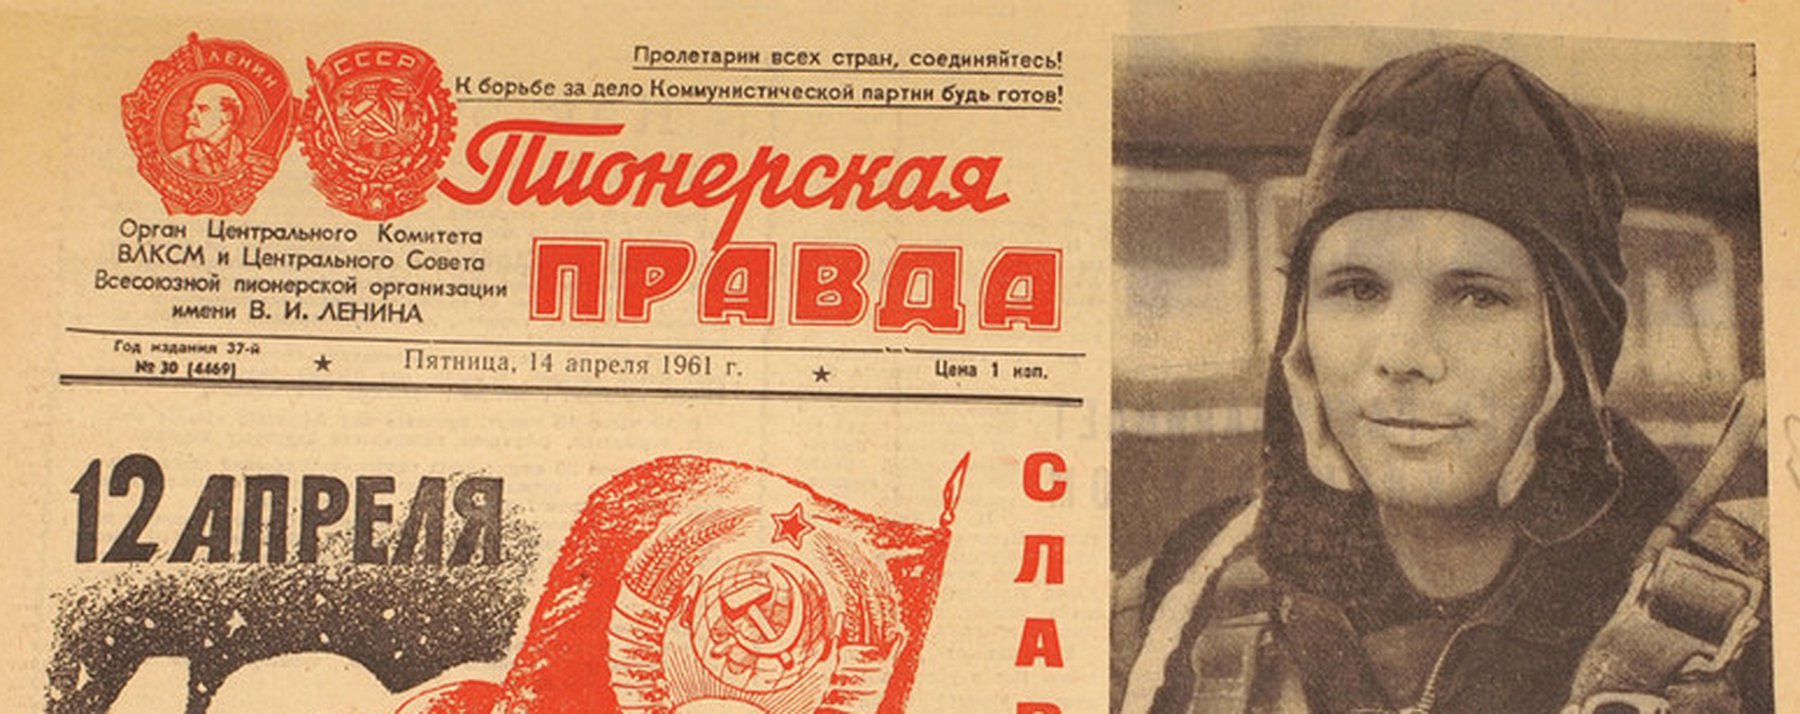 12 апреля 1961 какой день. Советская Пионерская правда. Первый выпуск газеты Пионерская правда. Пионерская правда газета СССР.